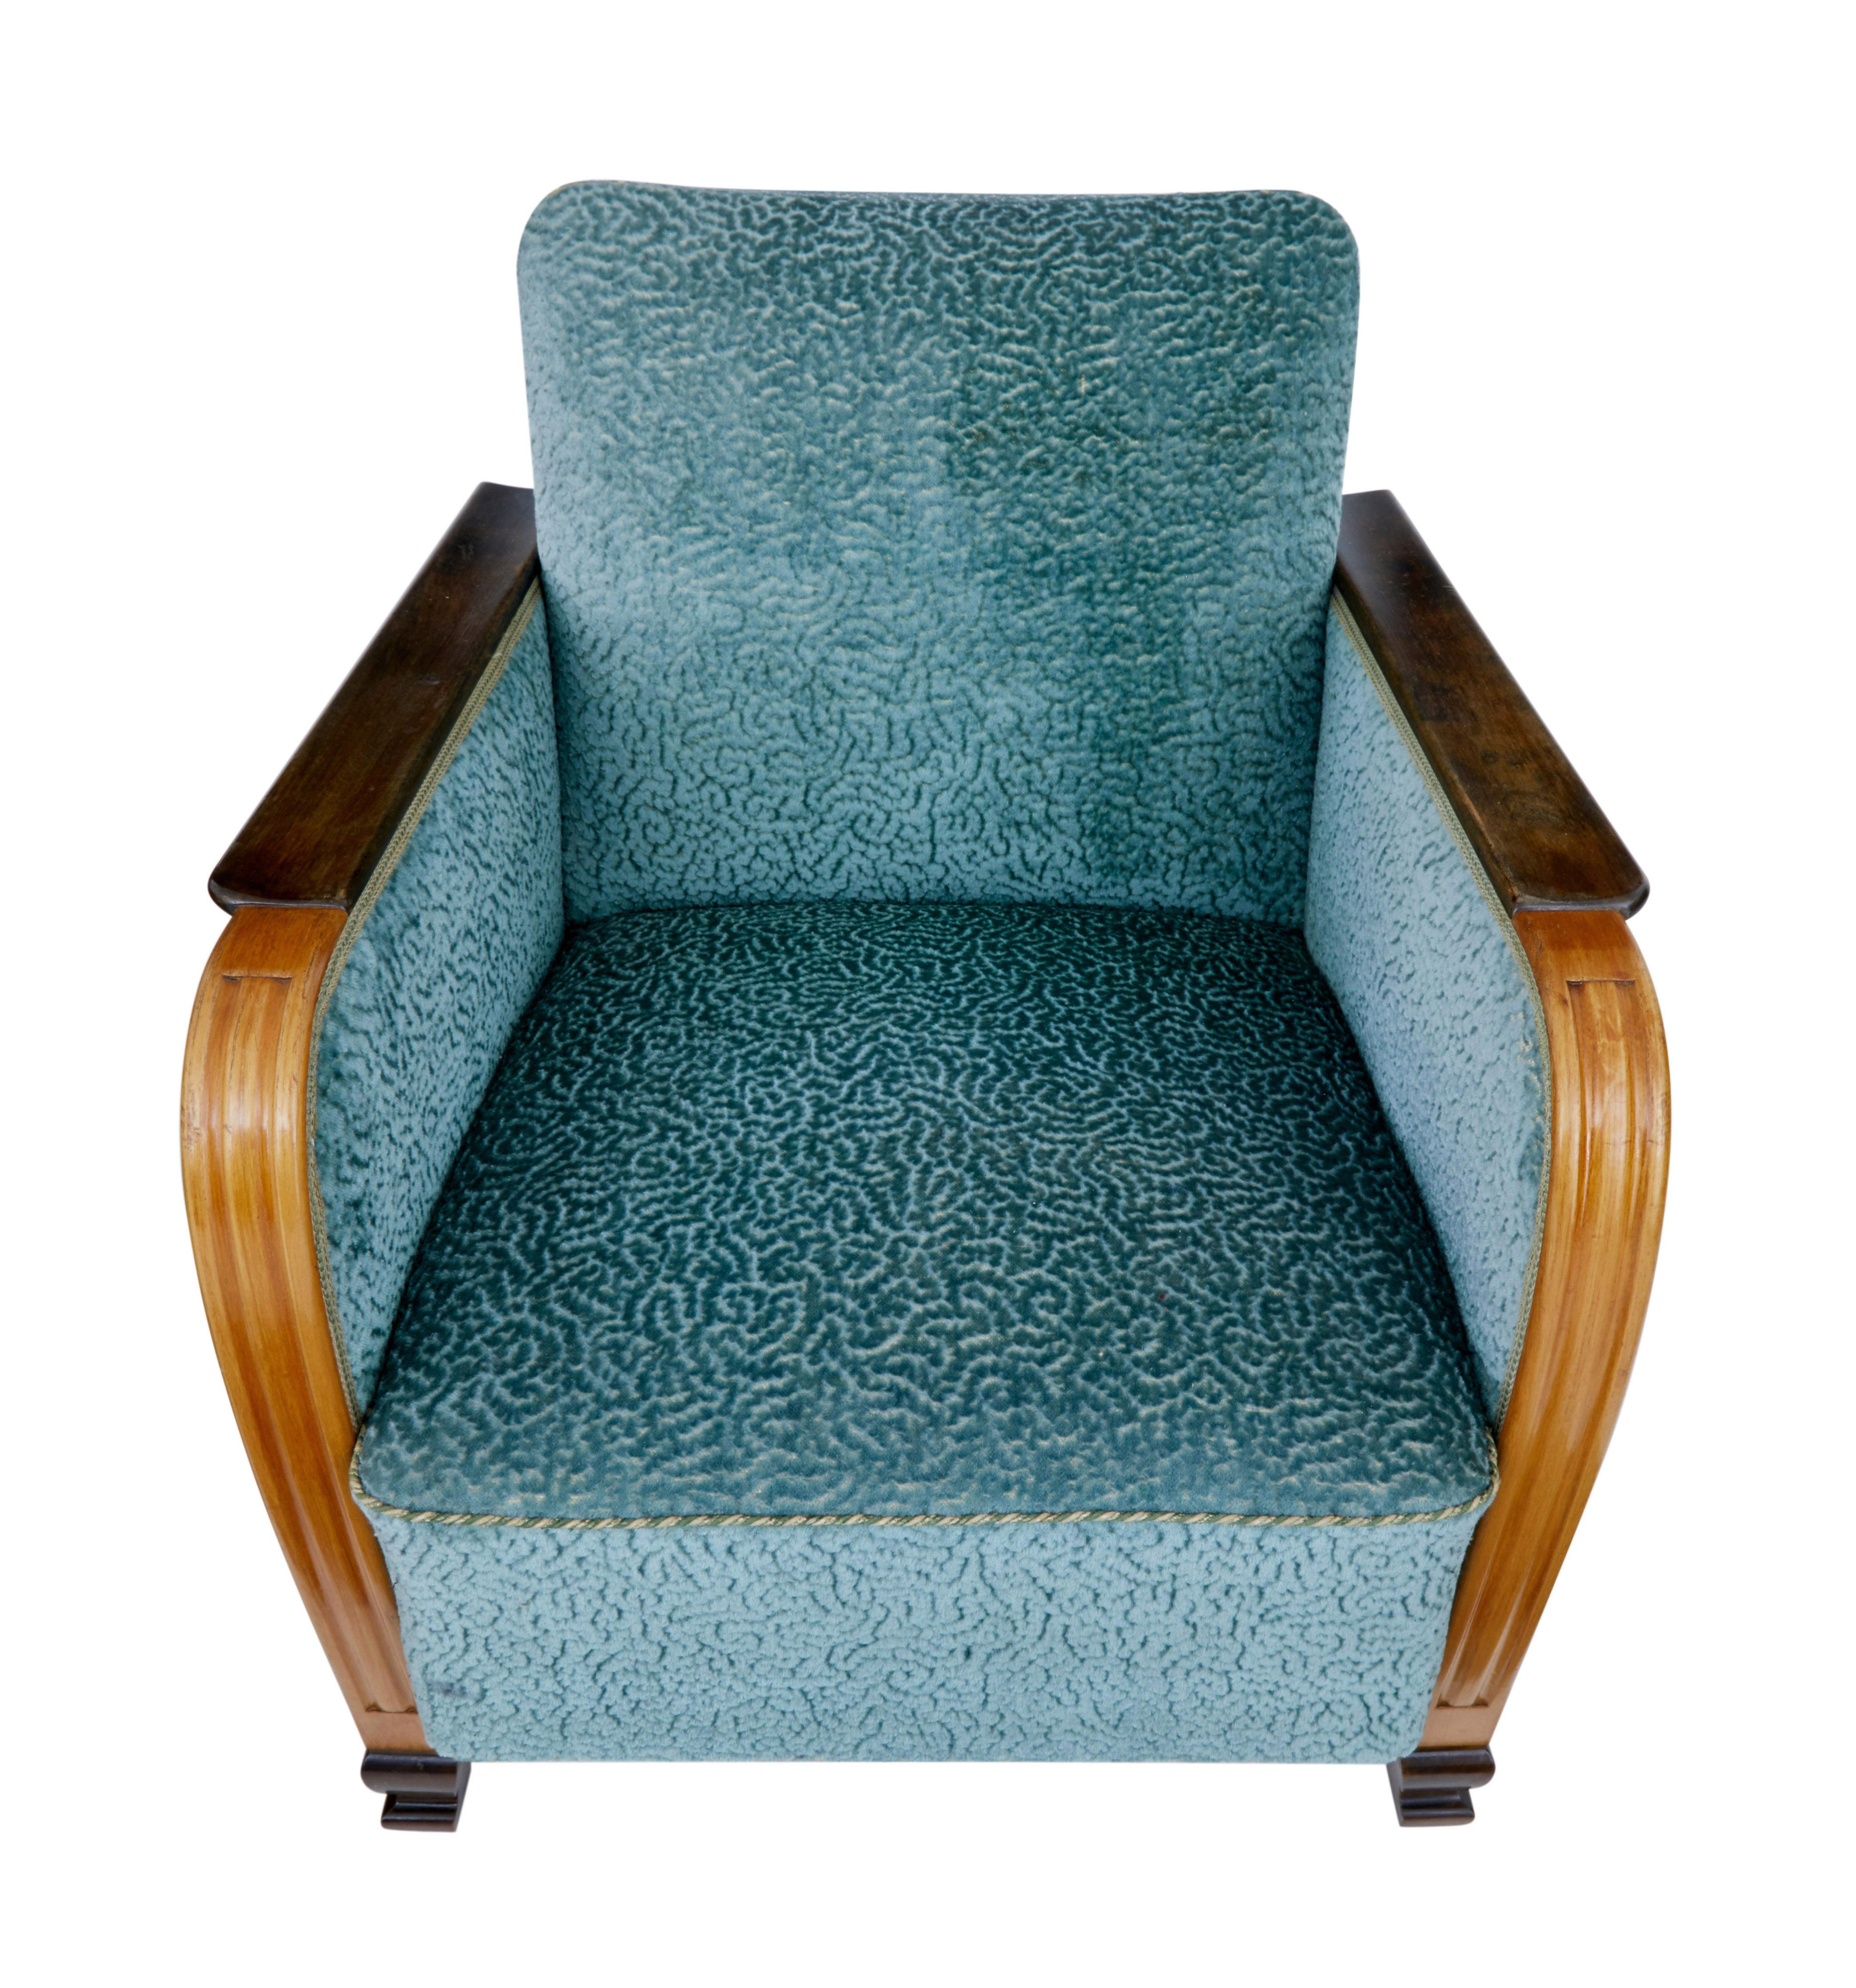 Paire de fauteuils suédois en orme et bouleau vers 1940.

Elegante paire de chaises de la fin de l'art déco, présentant de beaux côtés et accoudoirs en orme. Les accoudoirs sont dotés de cannelures à l'avant. Accoudoirs en bouleau teinté et pieds